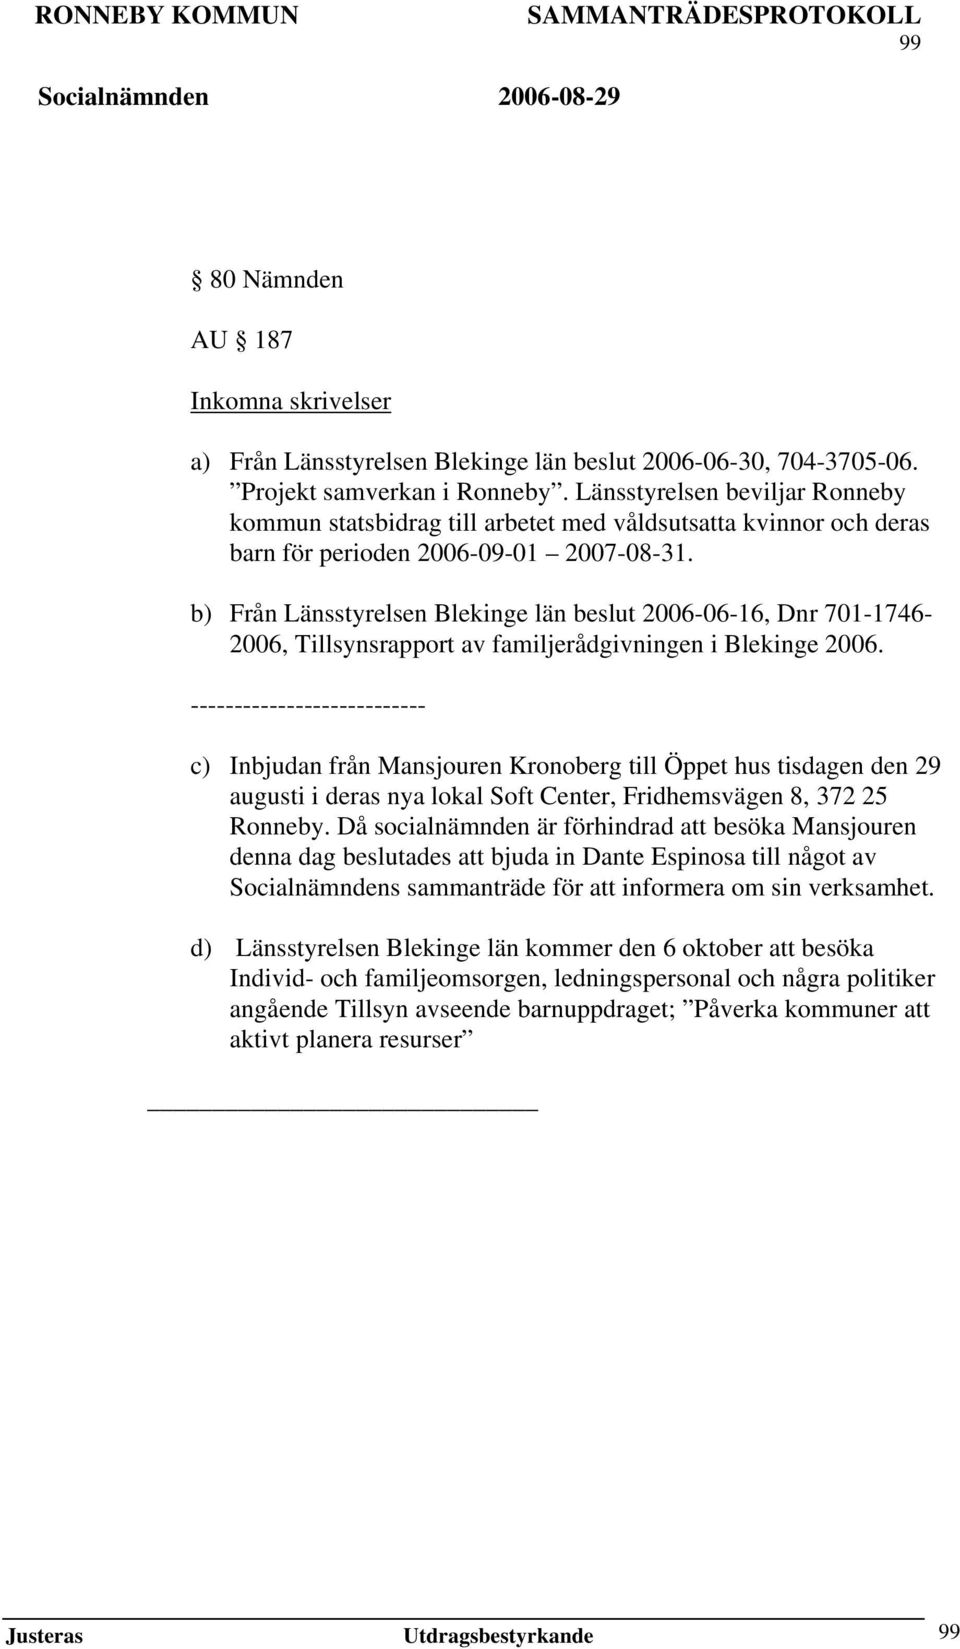 b) Från Länsstyrelsen Blekinge län beslut 2006-06-16, Dnr 701-1746- 2006, Tillsynsrapport av familjerådgivningen i Blekinge 2006.